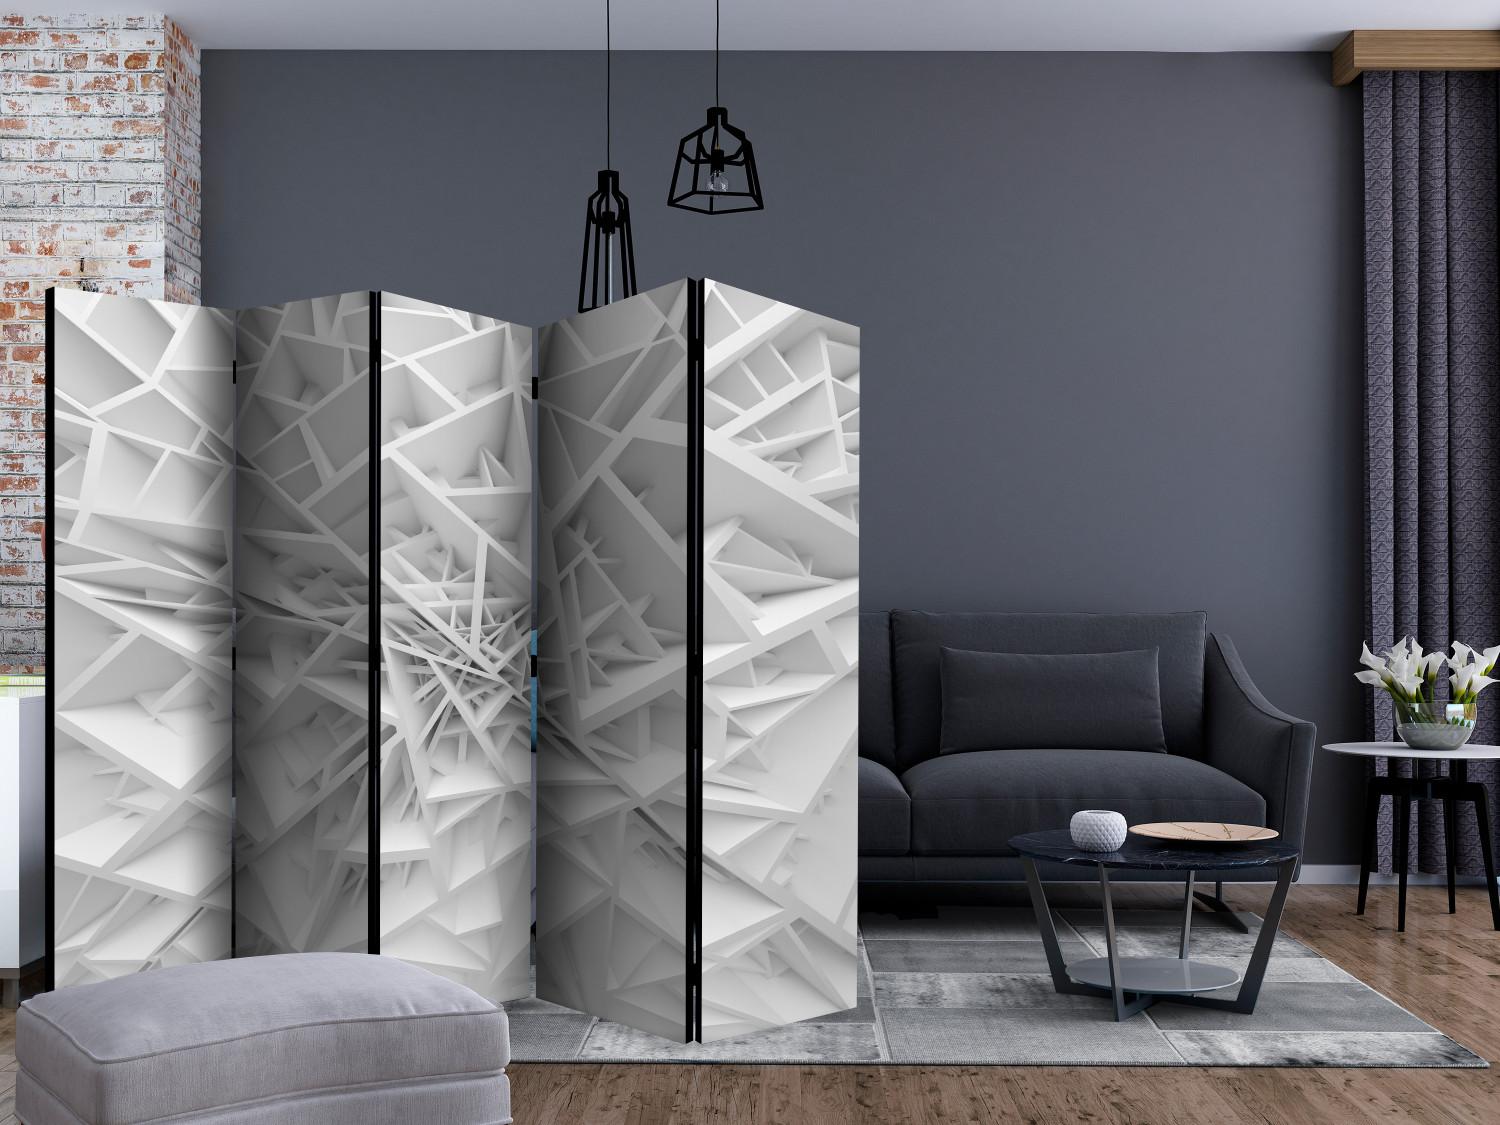 Biombo decorativo Telaraña blanca II - patrones abstractos en blanco y gris